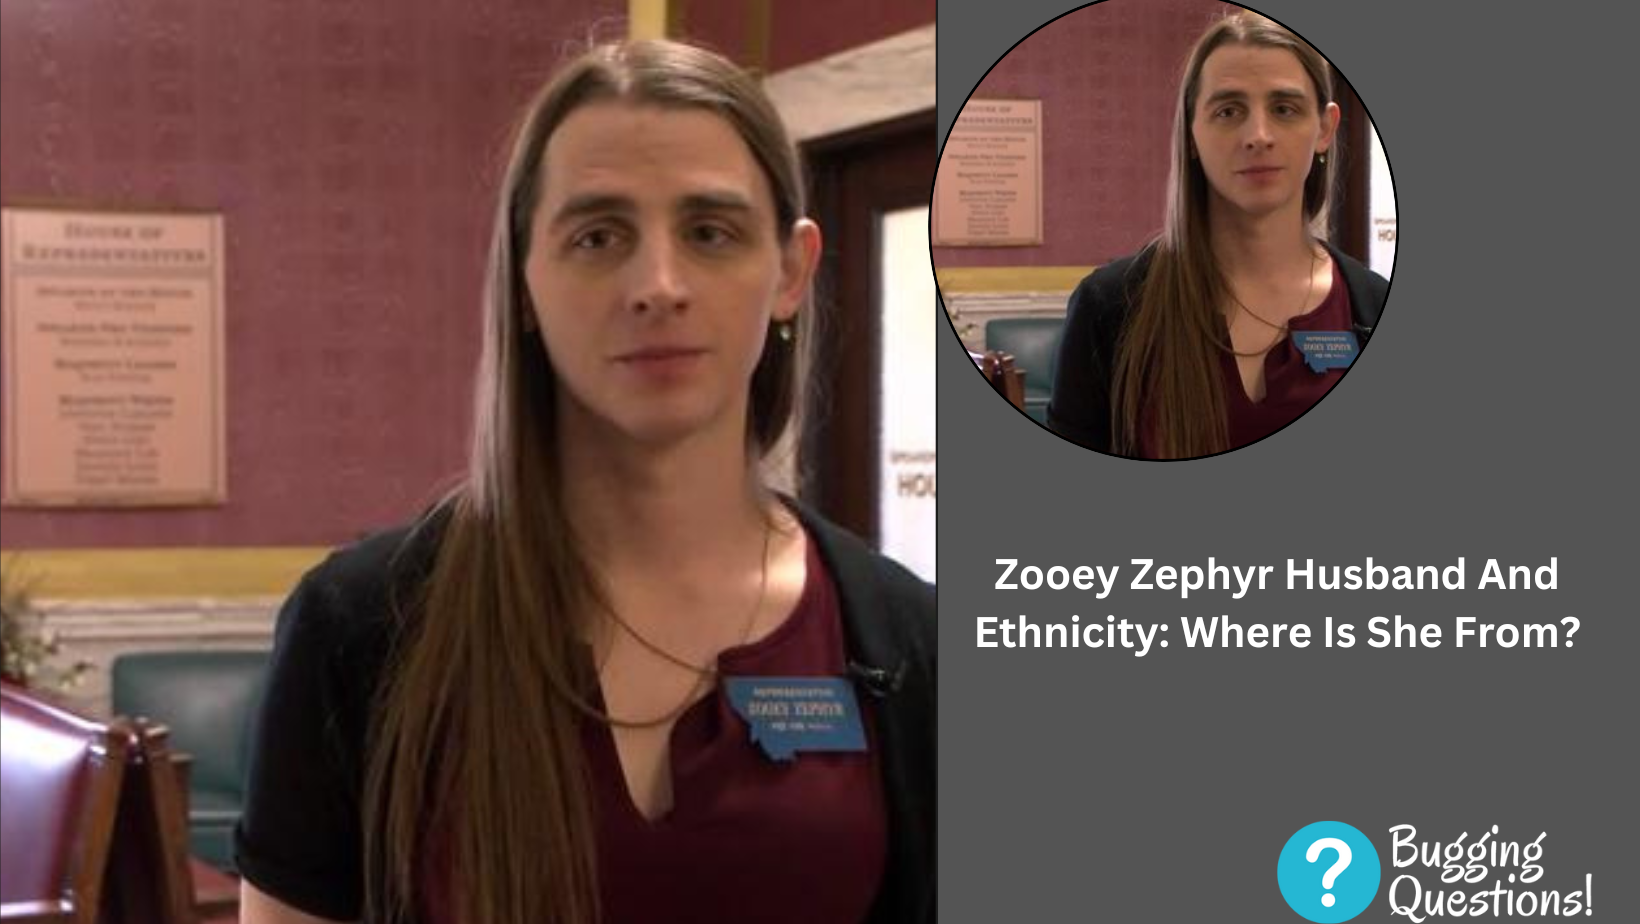 Zooey Zephyr Husband And Ethnicity